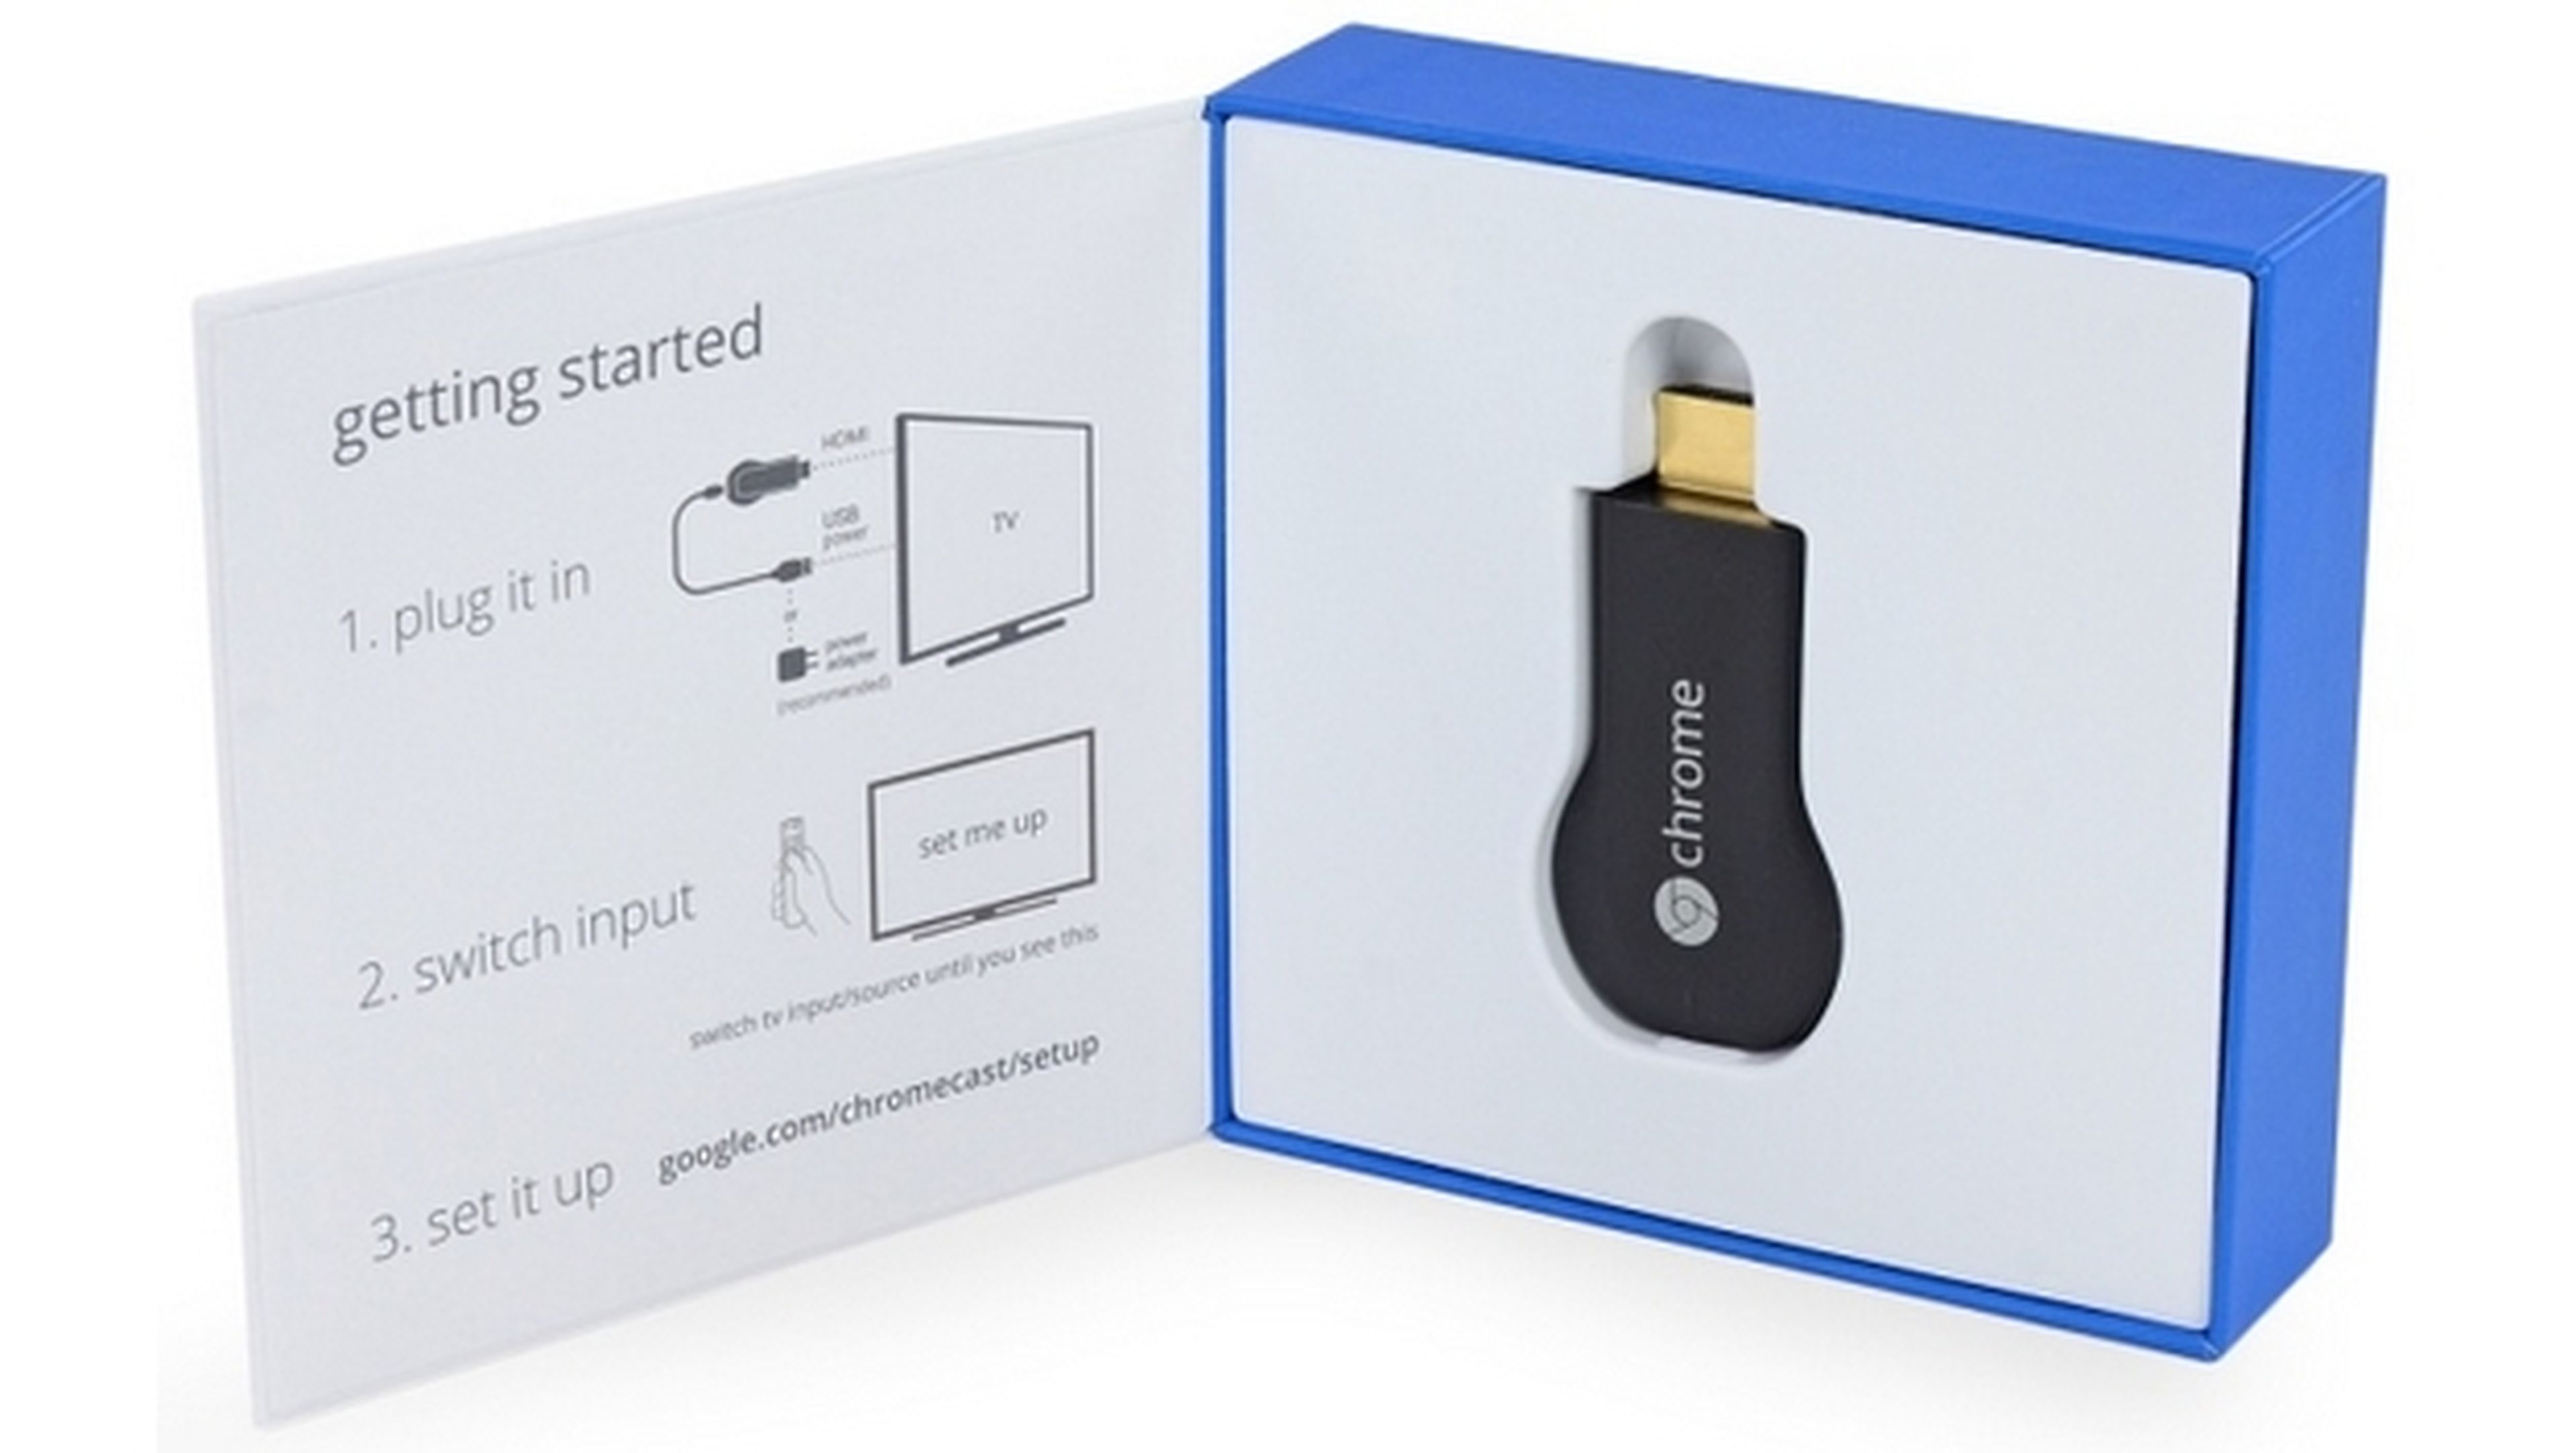 El nuevo Chromecast 2 de Google ya está listo, aunque no tendrá nuevas funcionalidades.